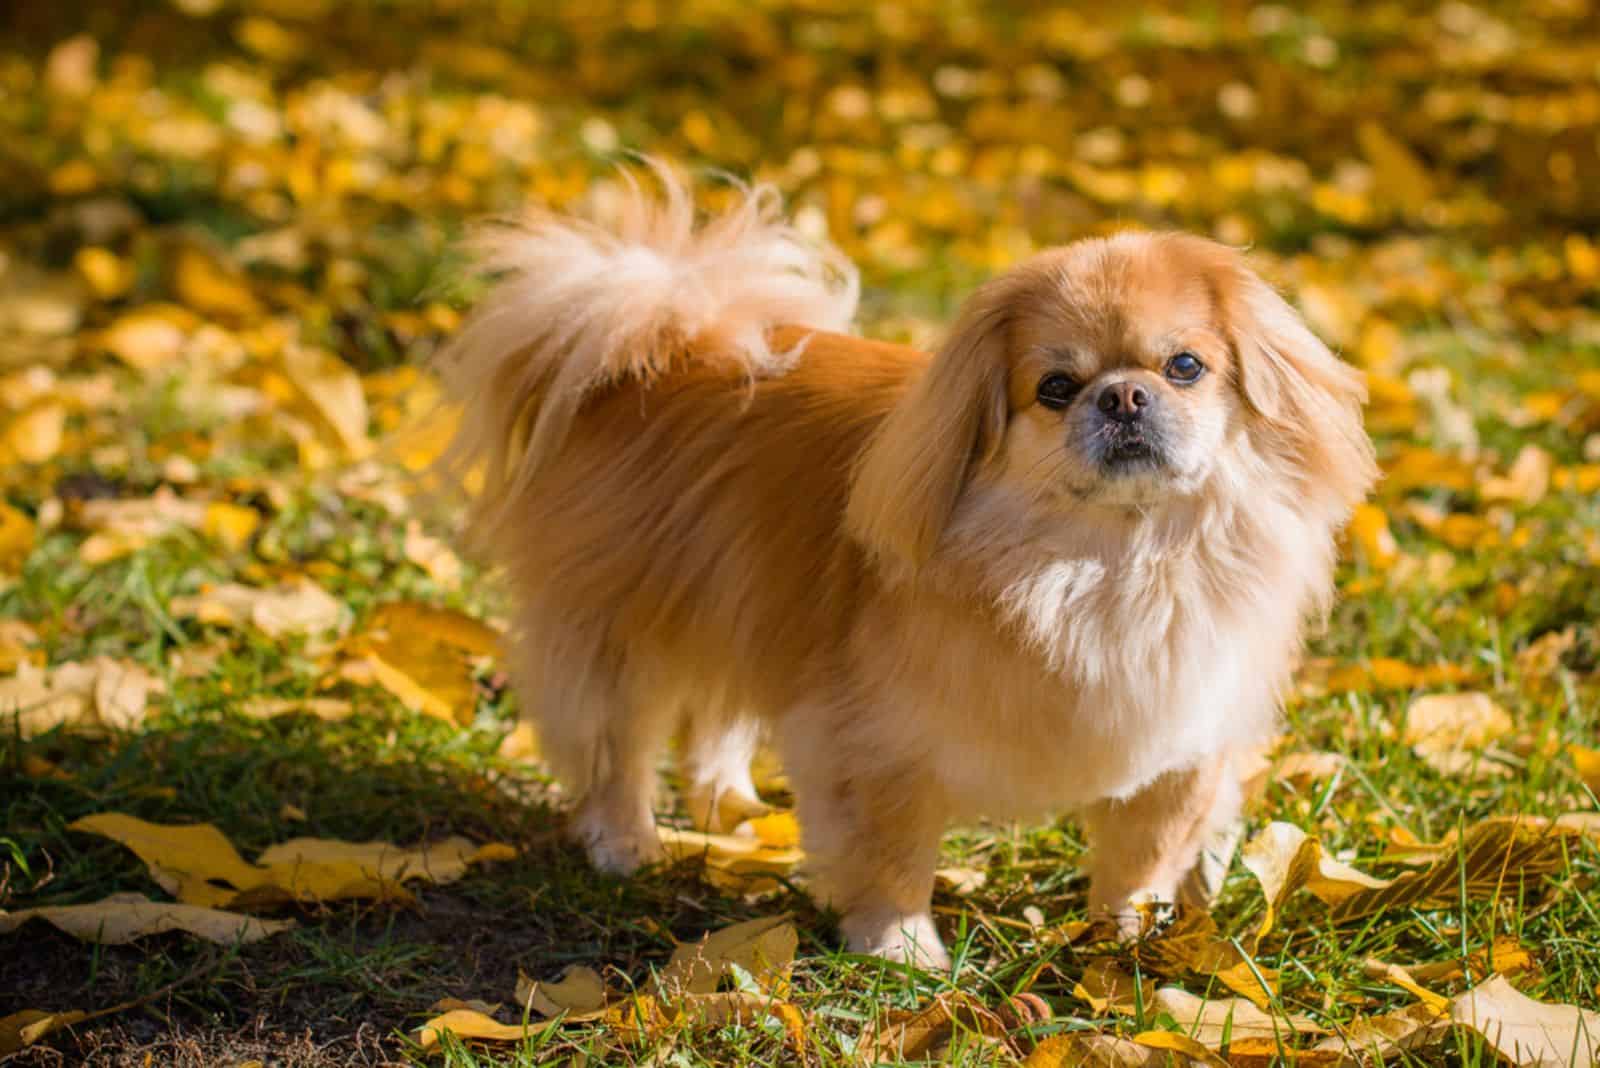  pekingese dog in autumn park